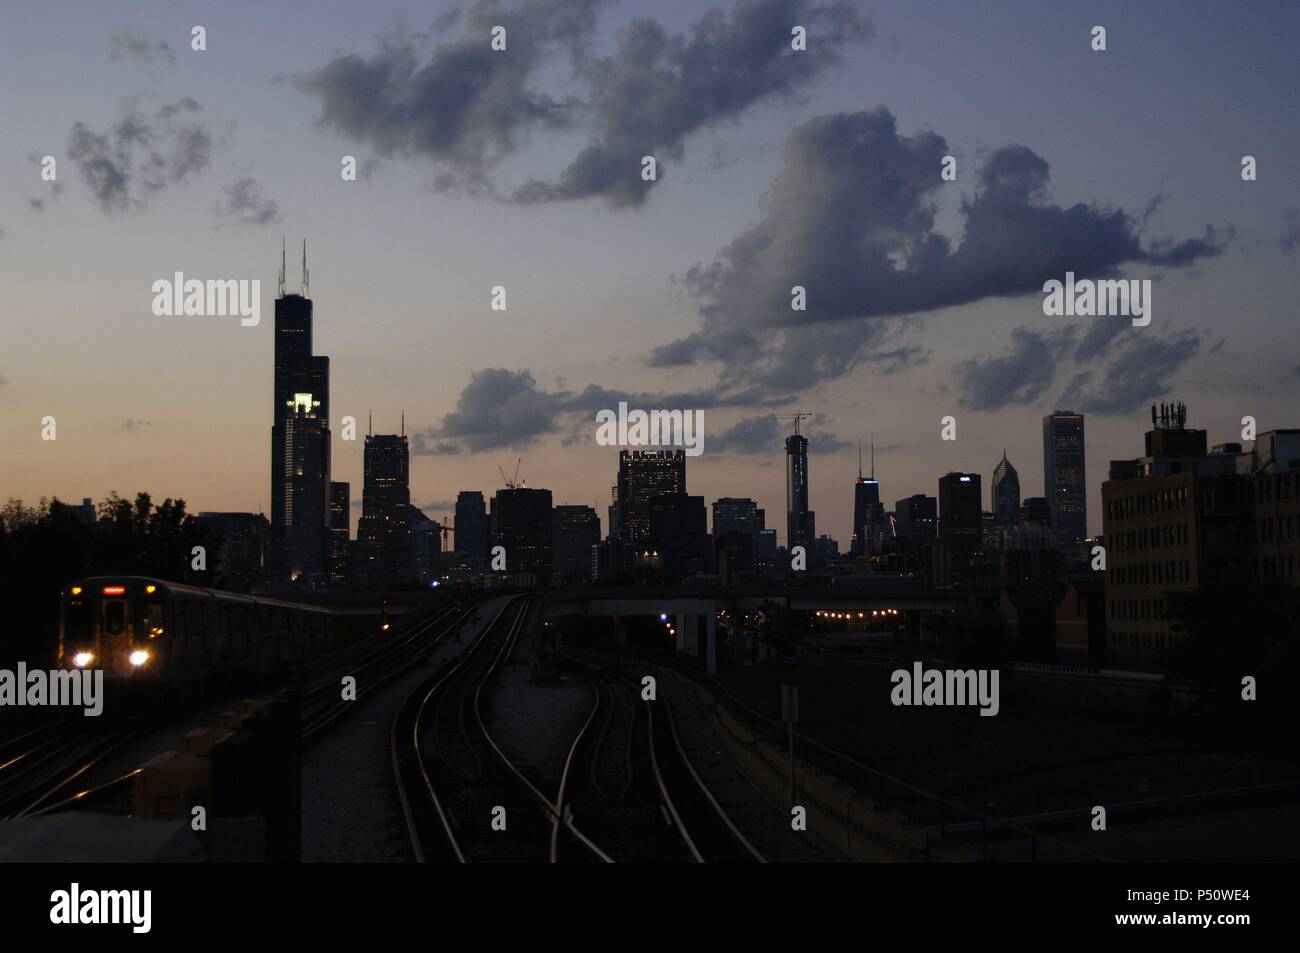 Vista nocturna de una ESTACION DE METRO exterior en Chinatown. Al fondo, los rascacielos del centro de la ciudad. CHICAGO. Estado de Illinois. Estados Unidos. Stock Photo